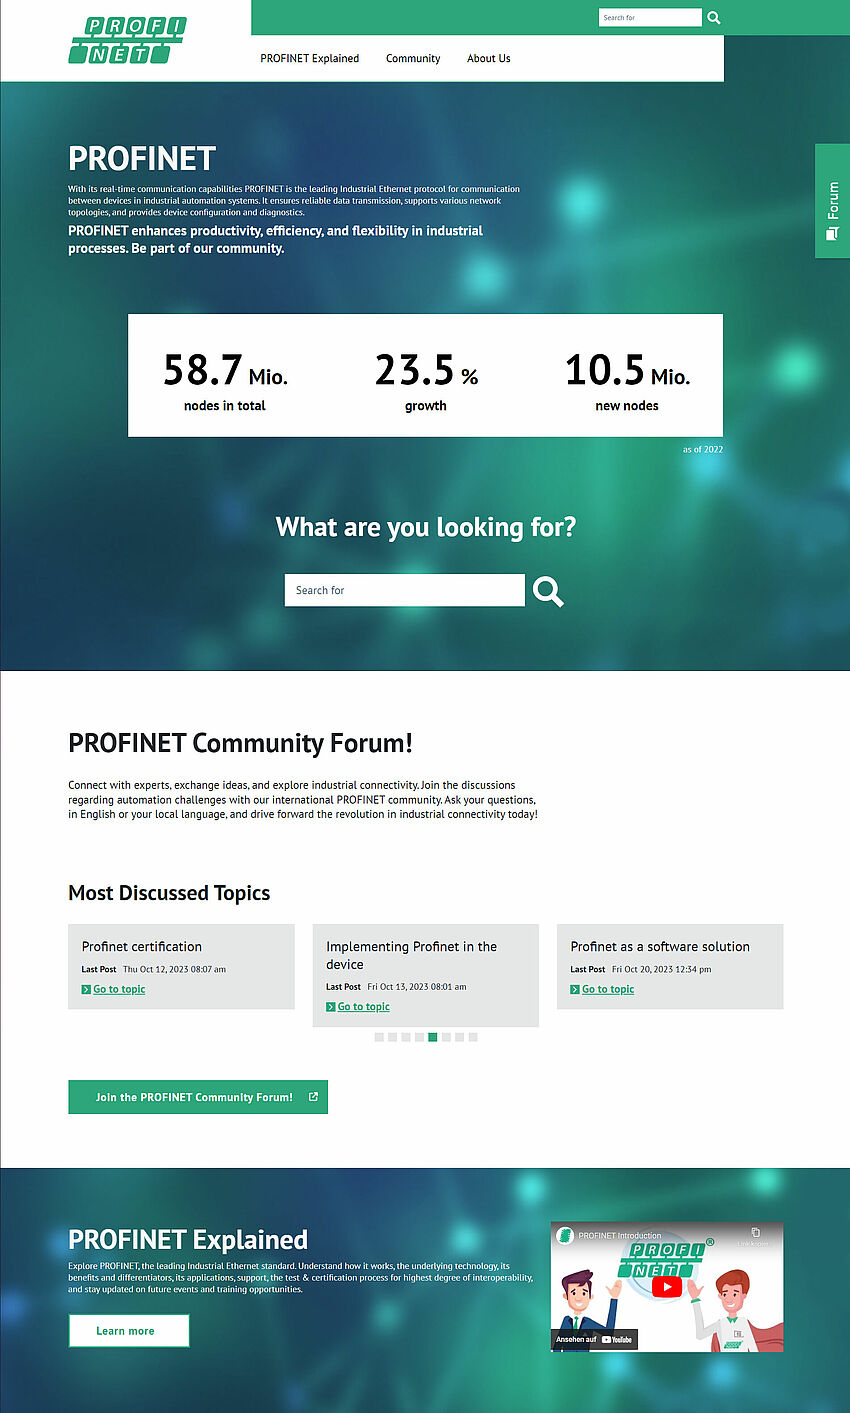 Screenshot der Startseite von PROFINET, dargestellt ist der obere Teil mit Navigation, Header, Suche, Forums-Topics und Call-to-Action